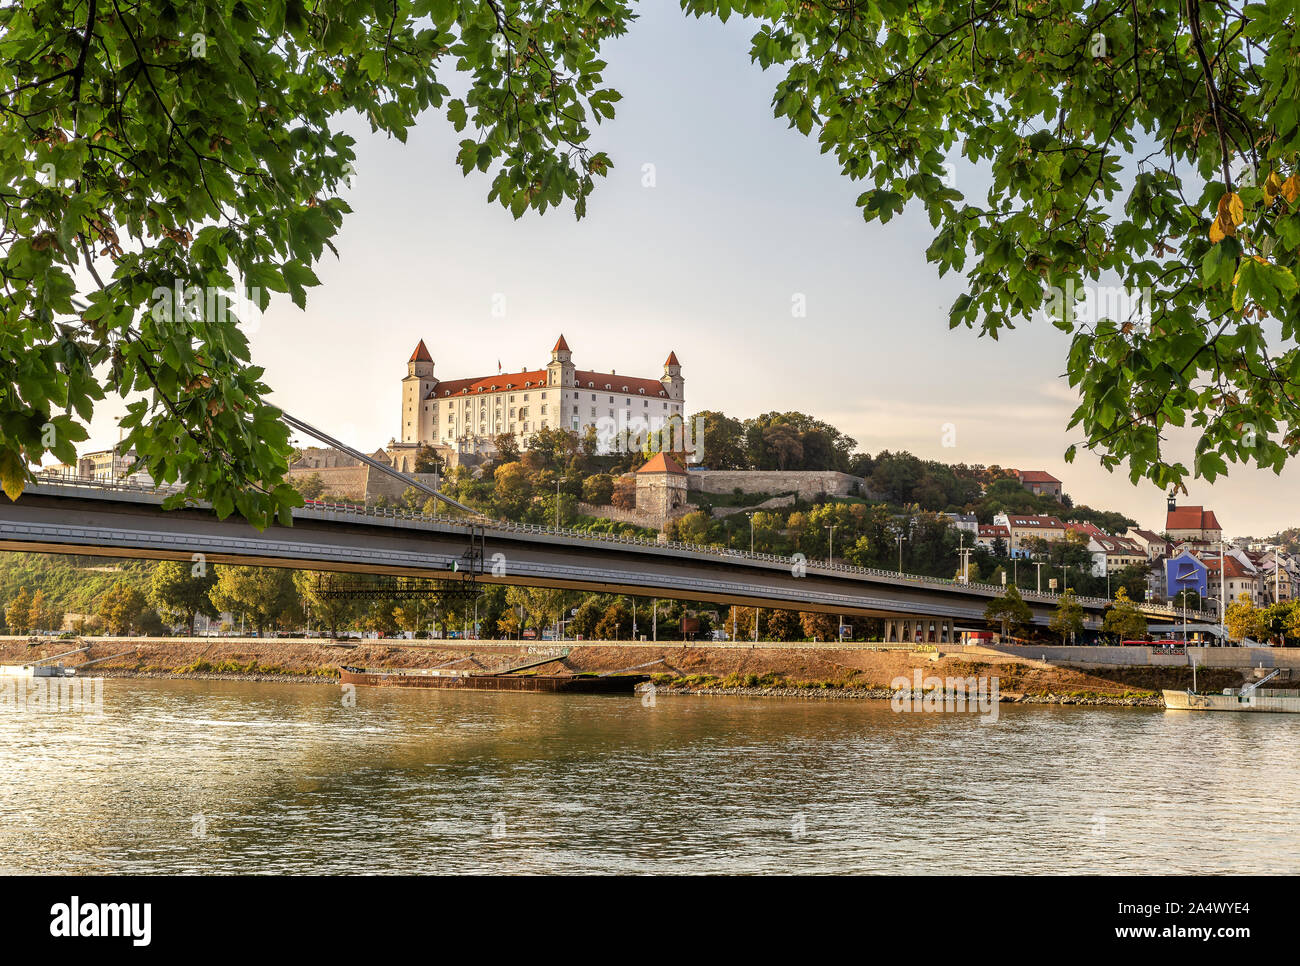 View of Bratislava castle in Bratislava capital of Slovakia. Stock Photo